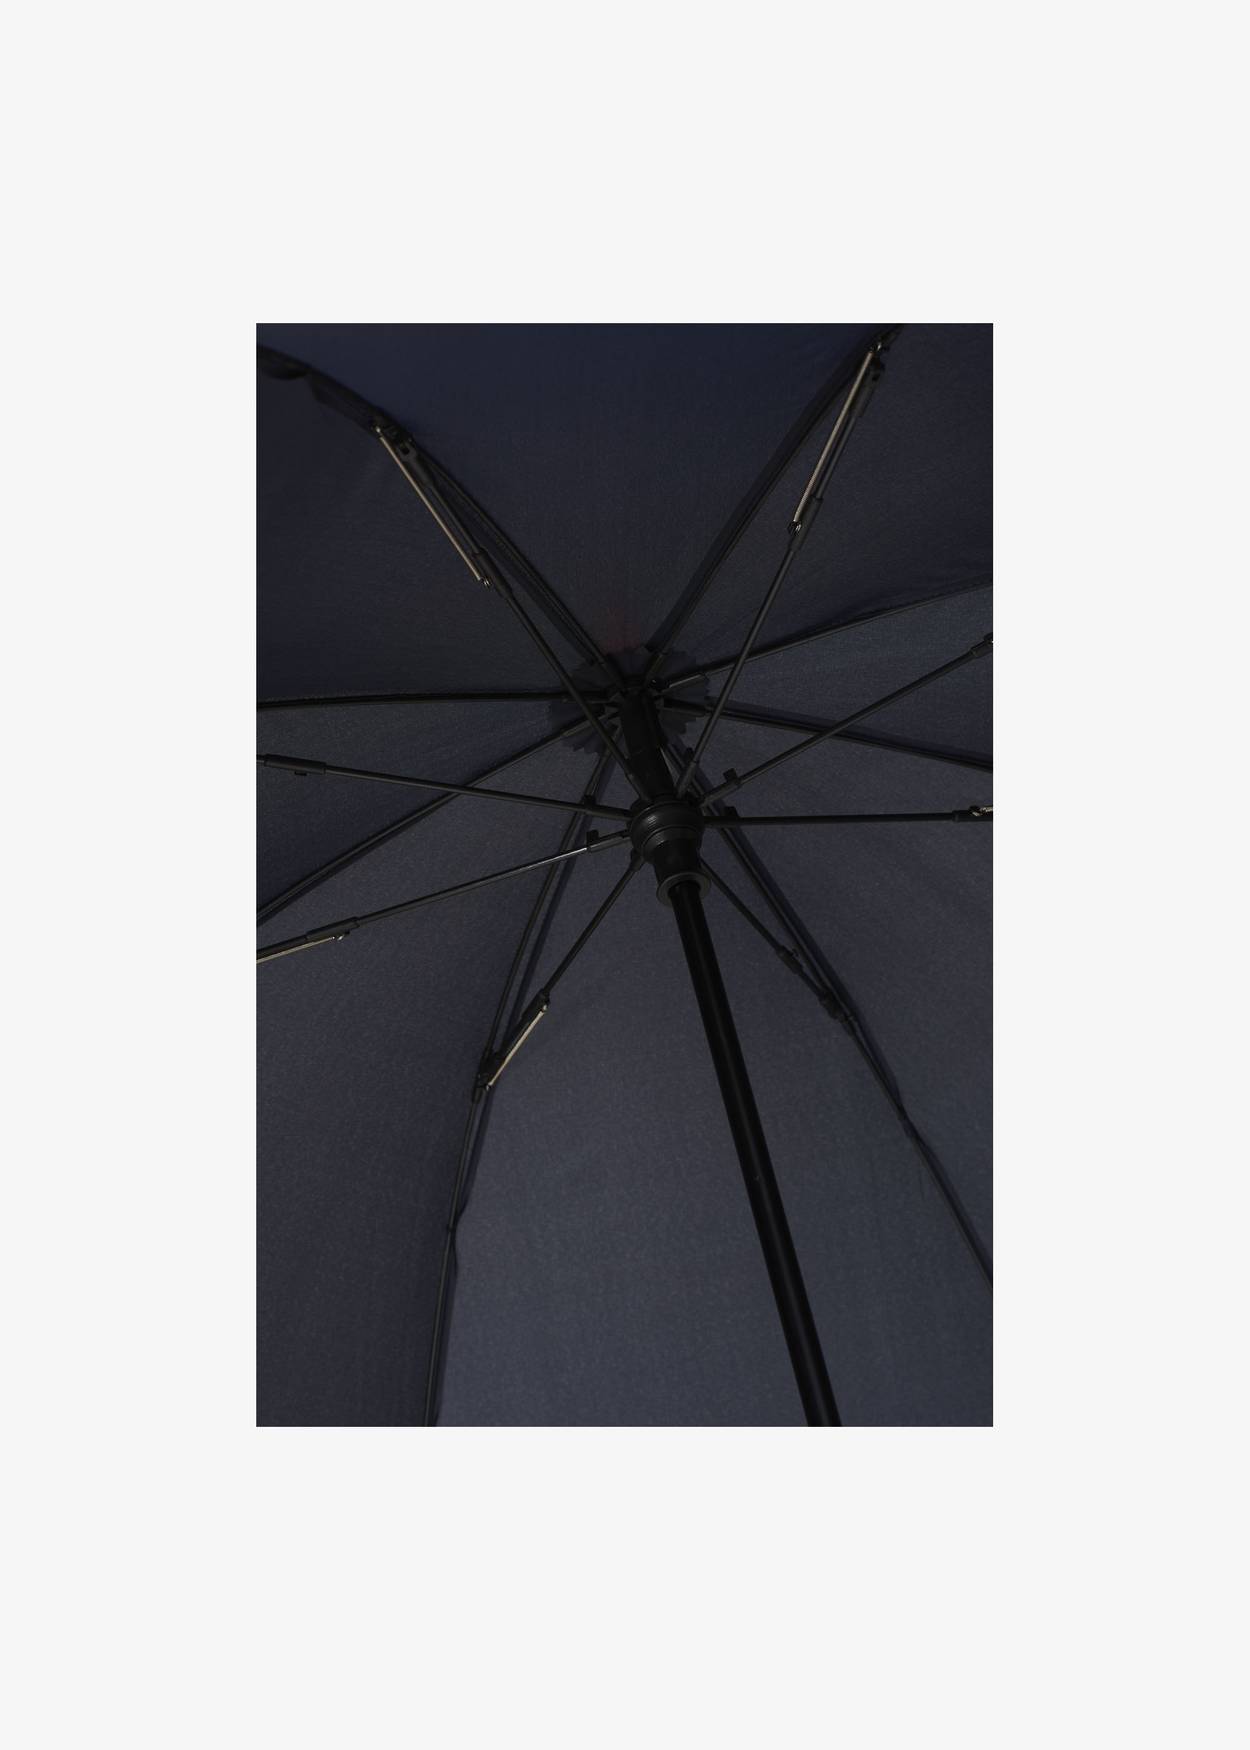 Long Umbrella II